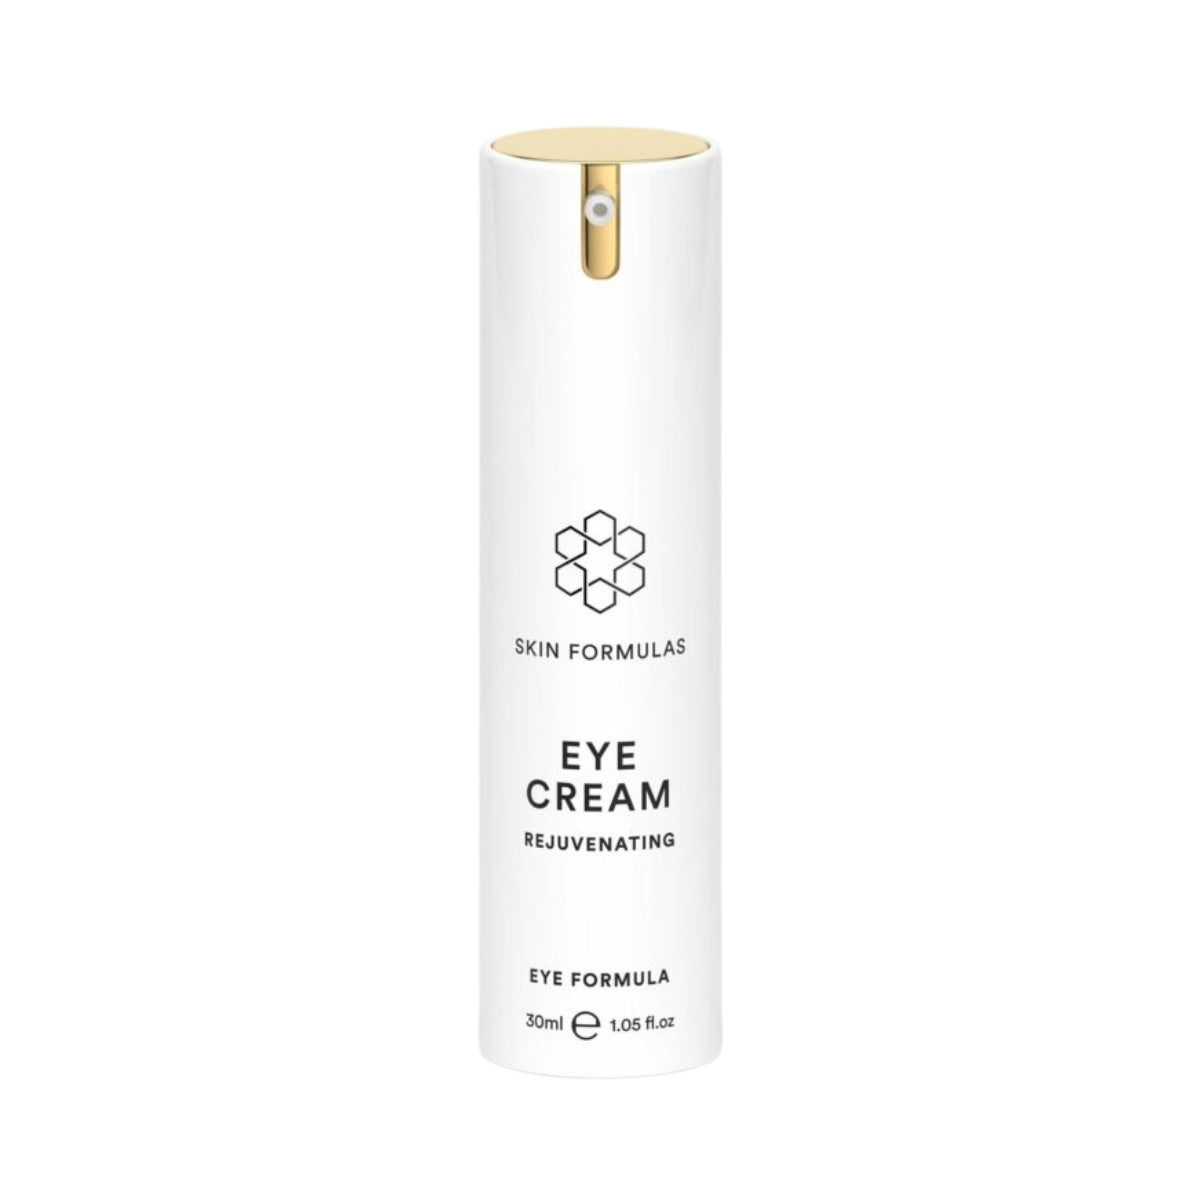 Skin Formulas Eye Cream Rejuvenating